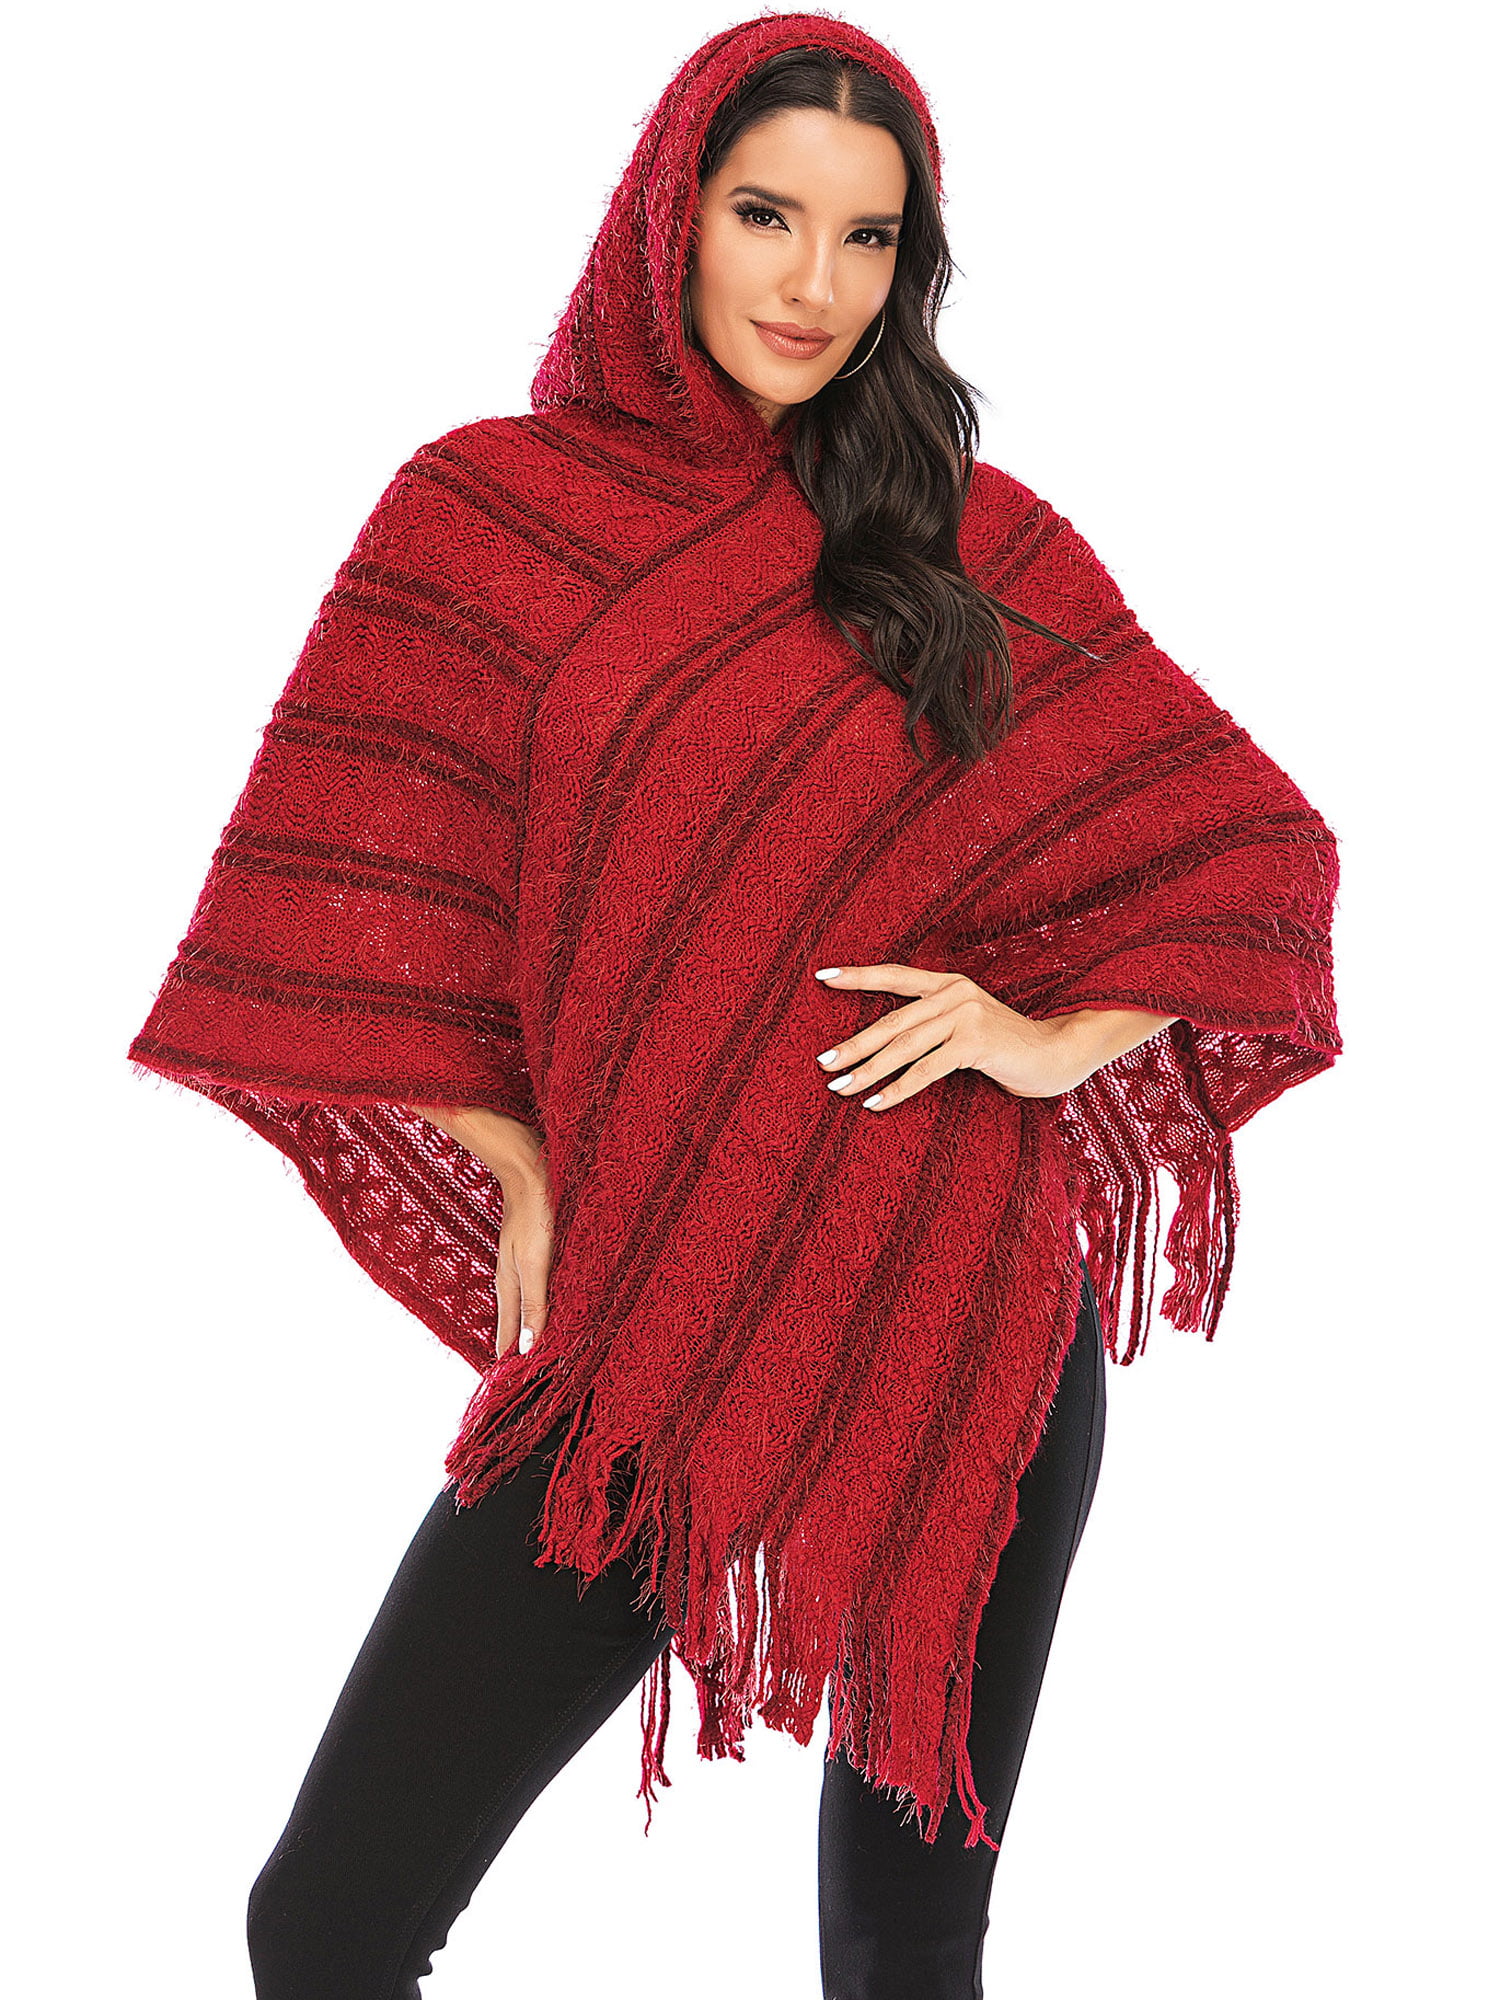 Gray Geometric Aztec Cape Shawl Wrap Sweater Scarf w/ Fringe One Size 